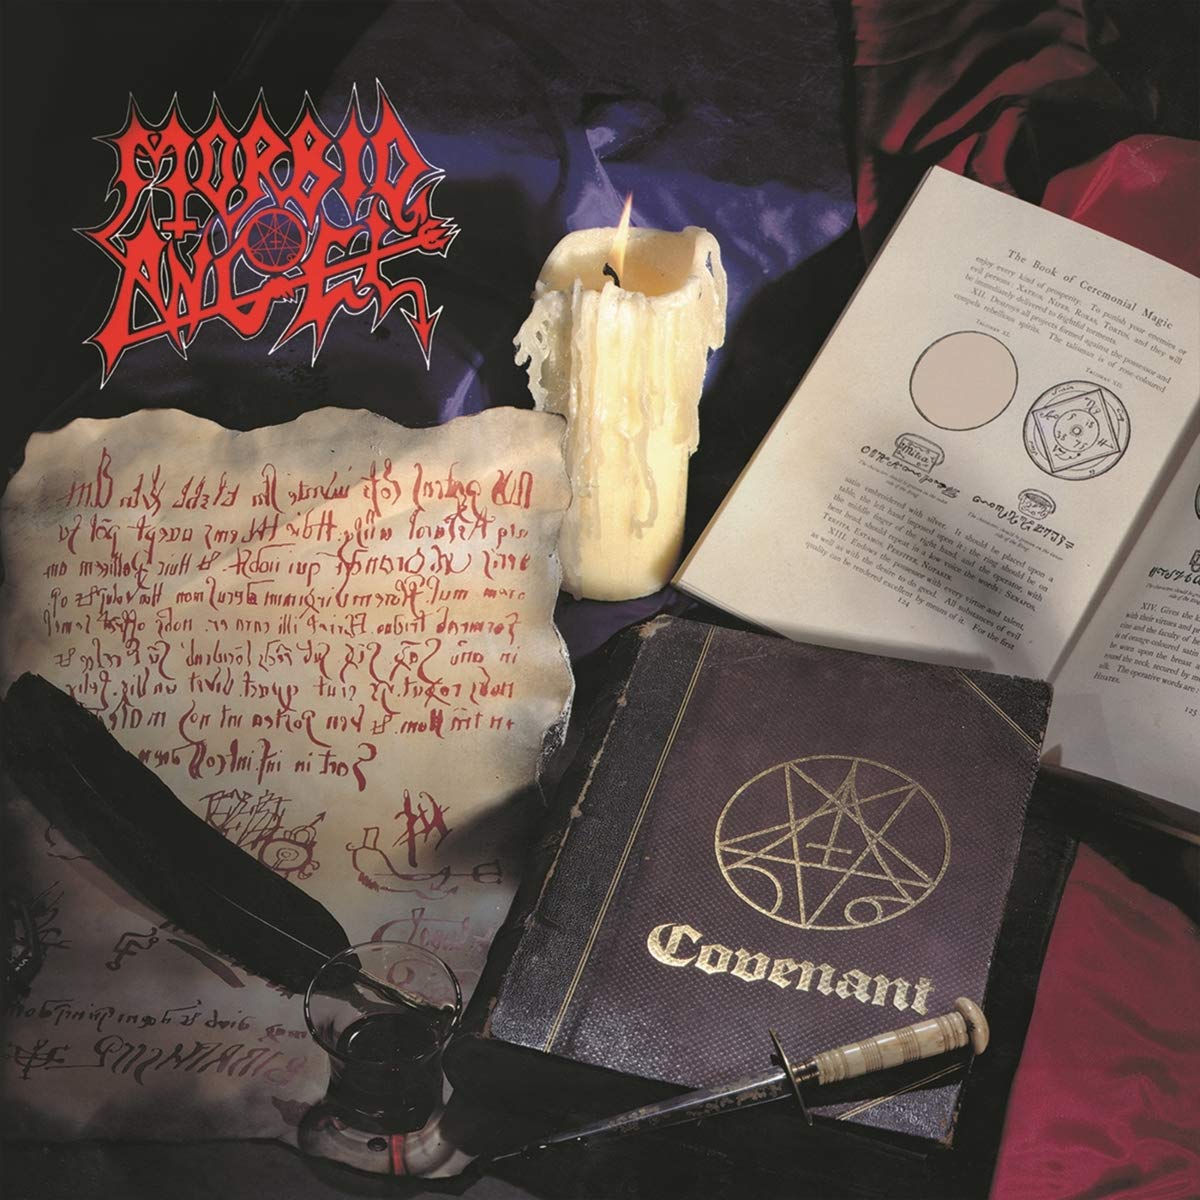 Morbid Angel "Covenant" FDR Vinyl